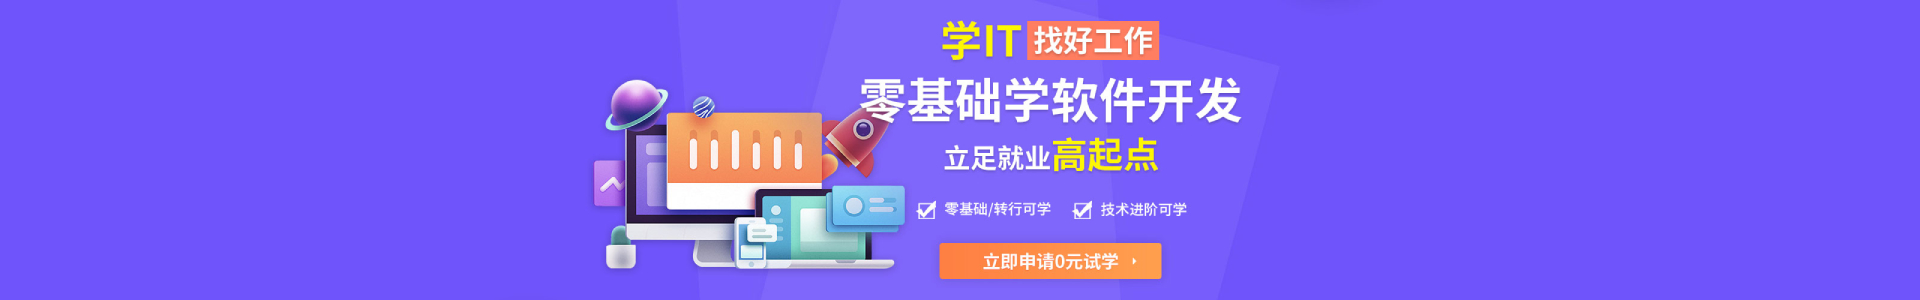 上海中公优就业IT培训机构